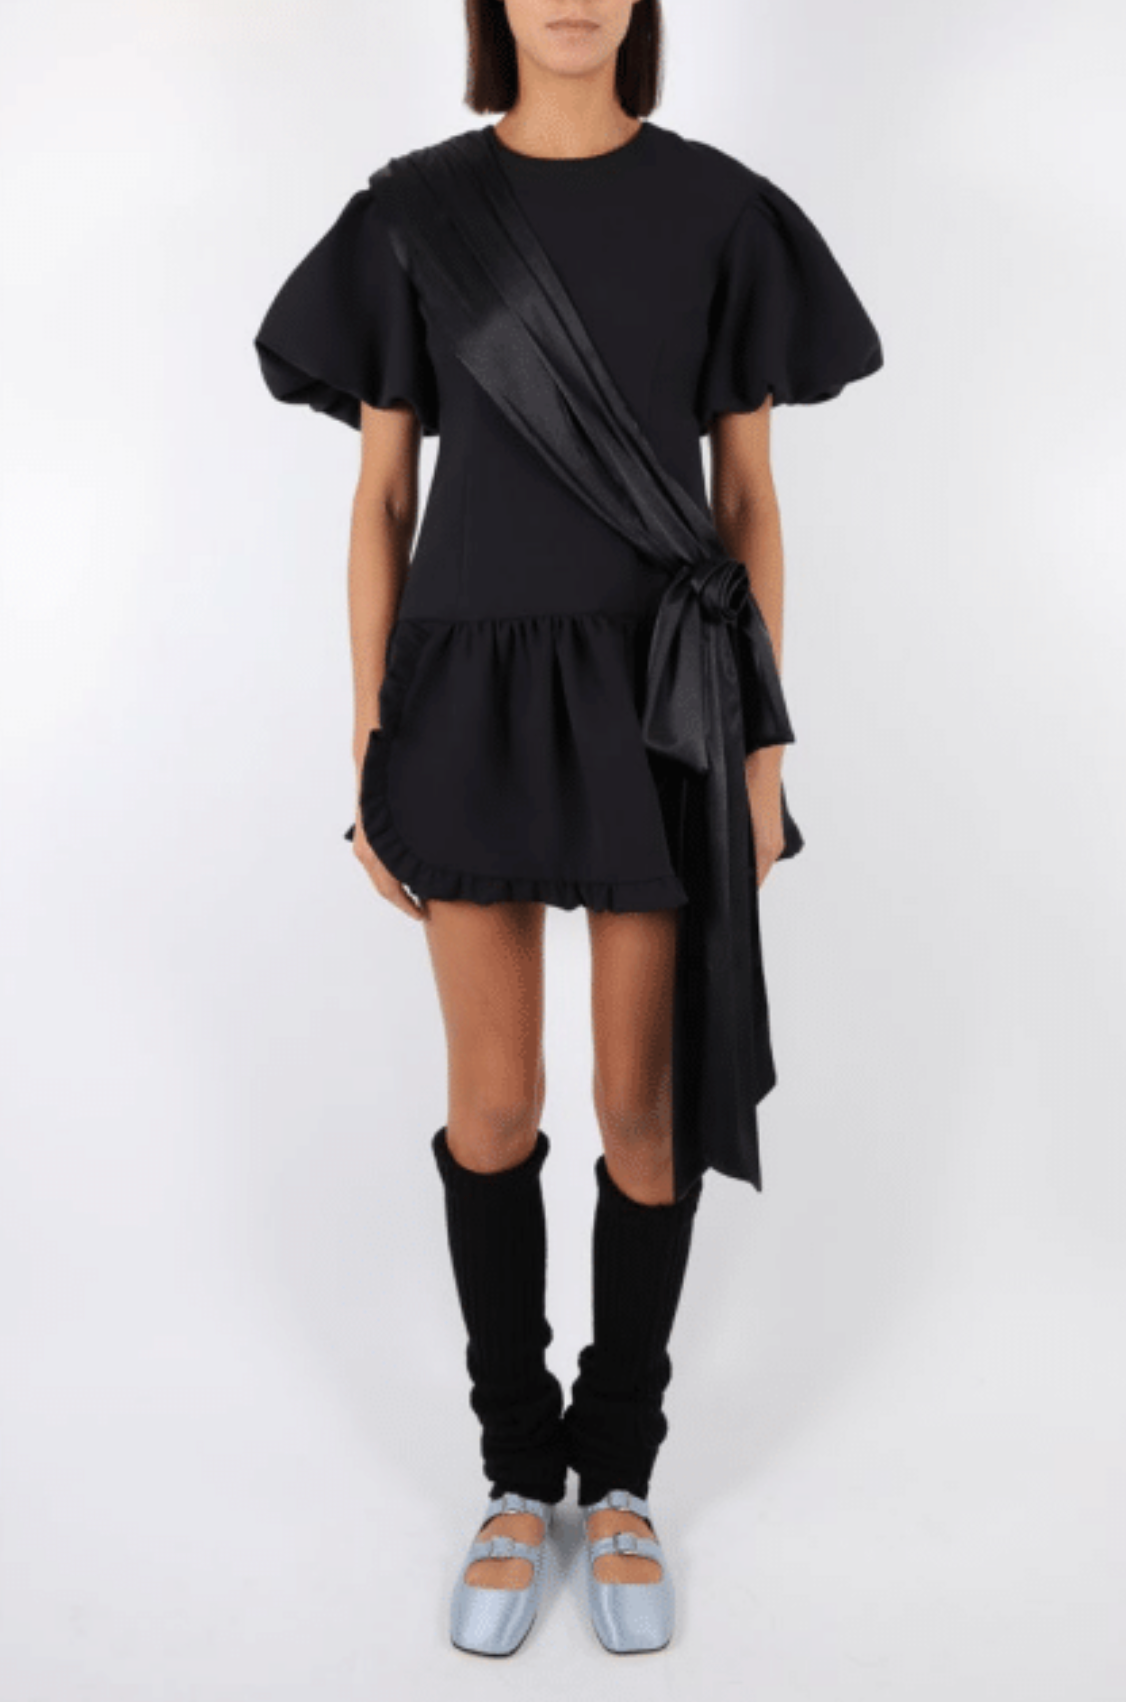 Filenes Dress in Black by Sandy Liang